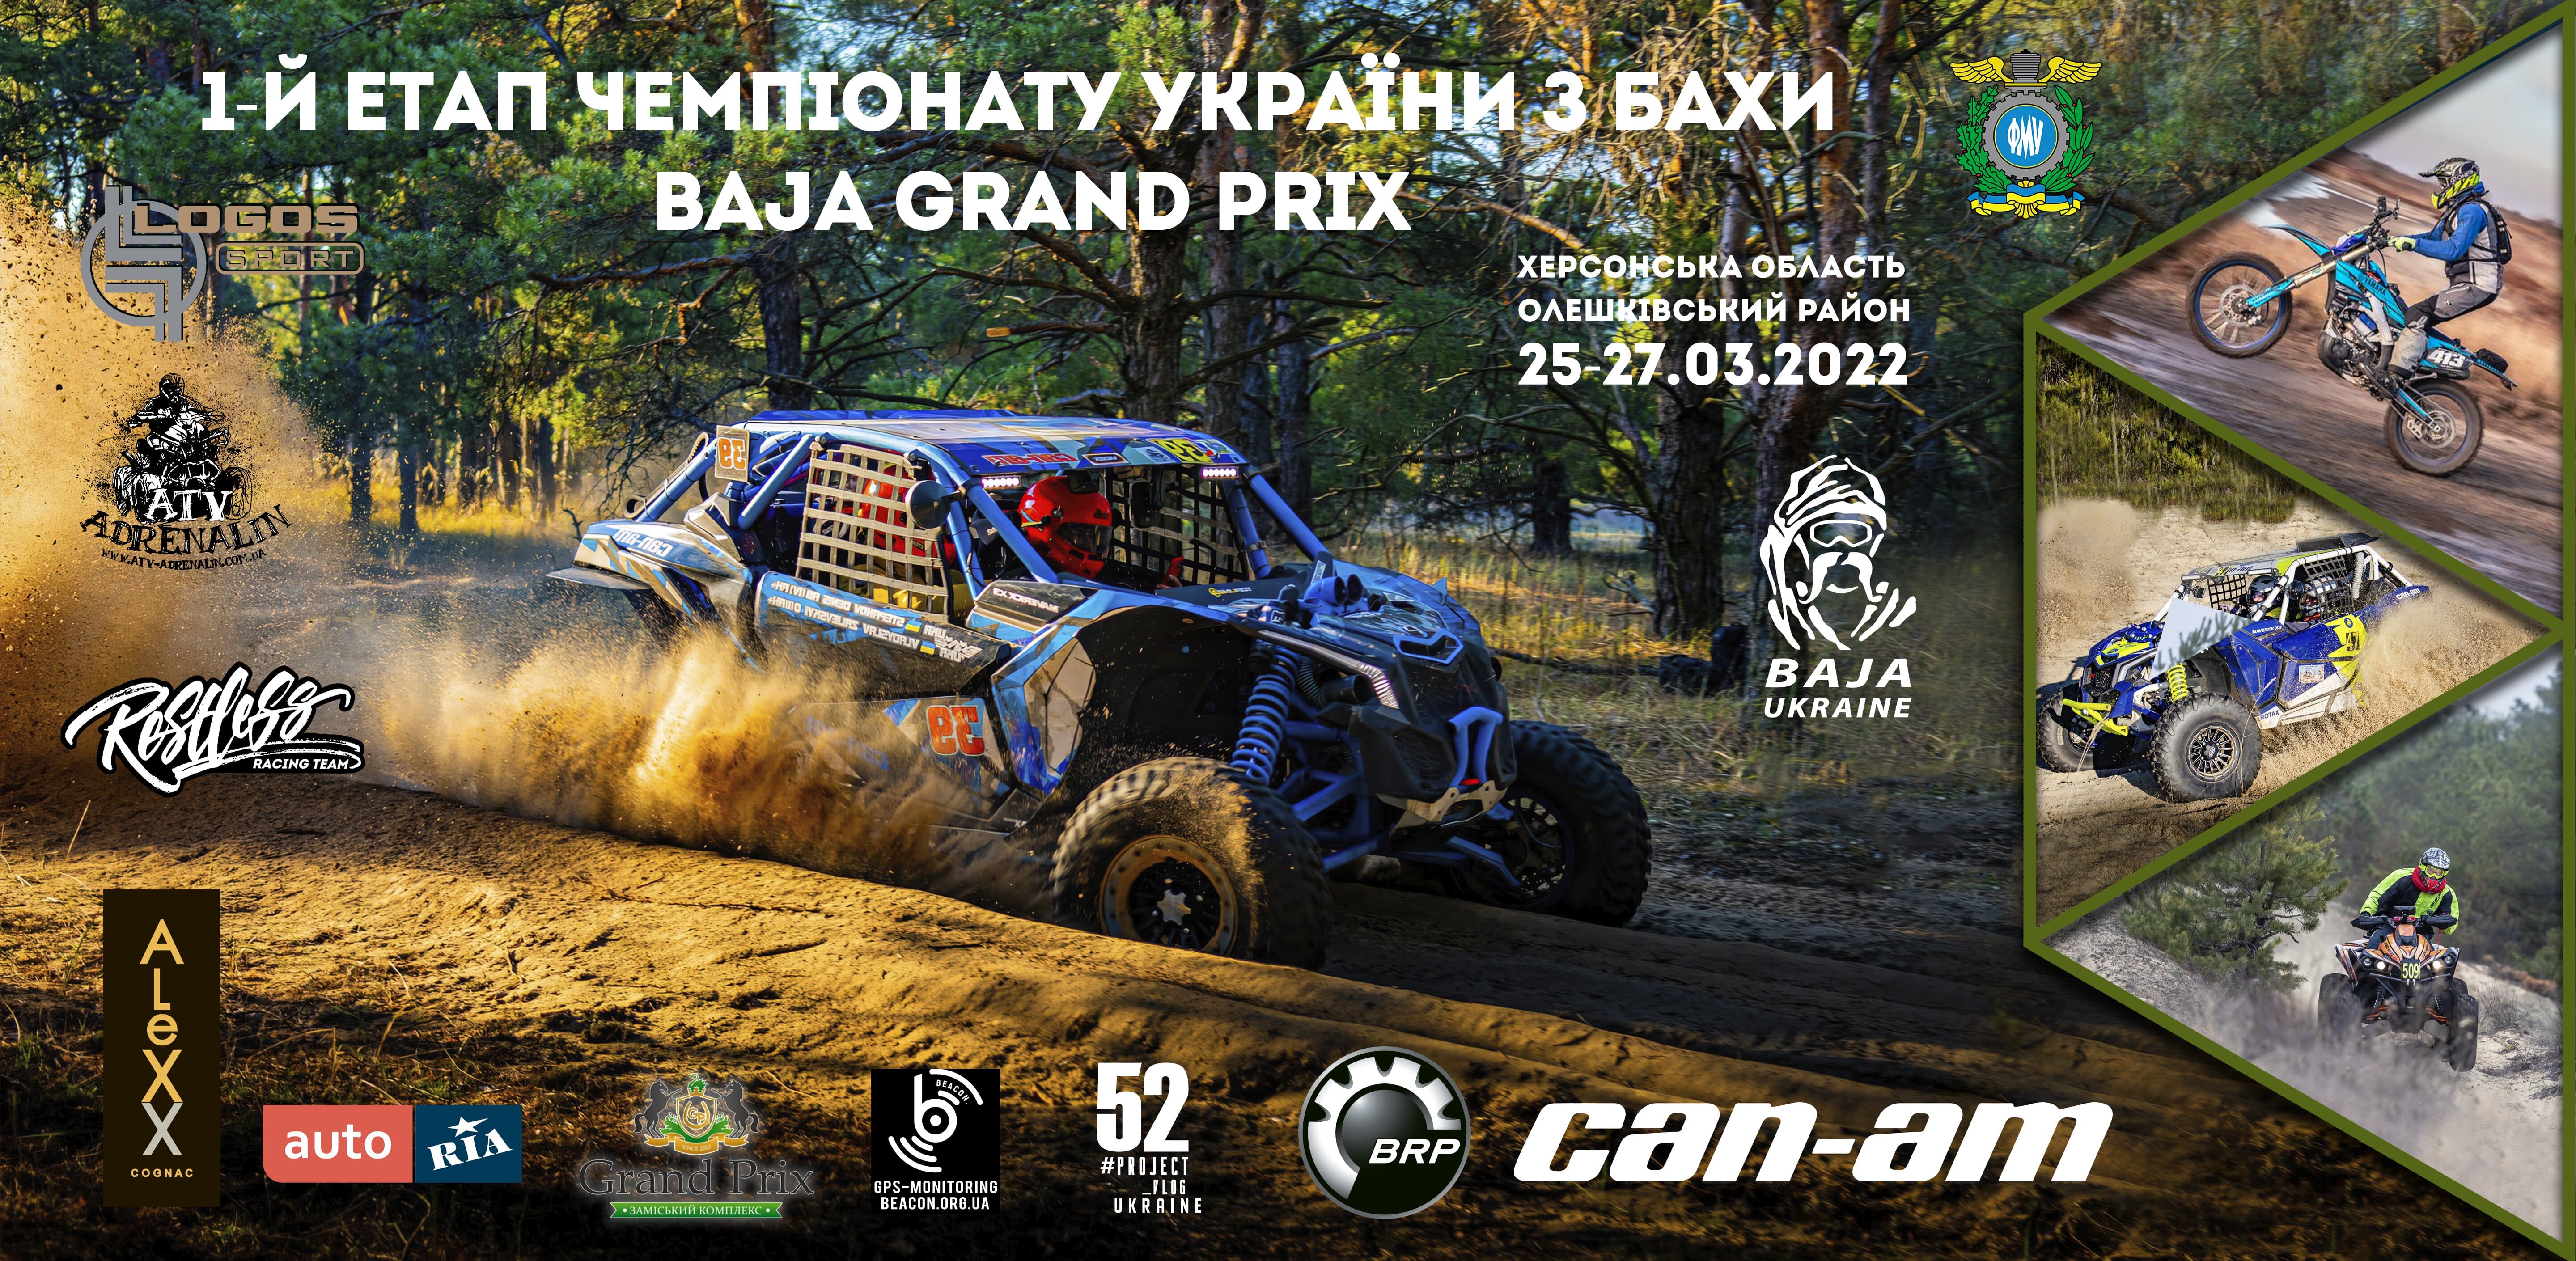 «BAJA GRAND PRIX» 1-й етап Чемпіонату України з BAJA